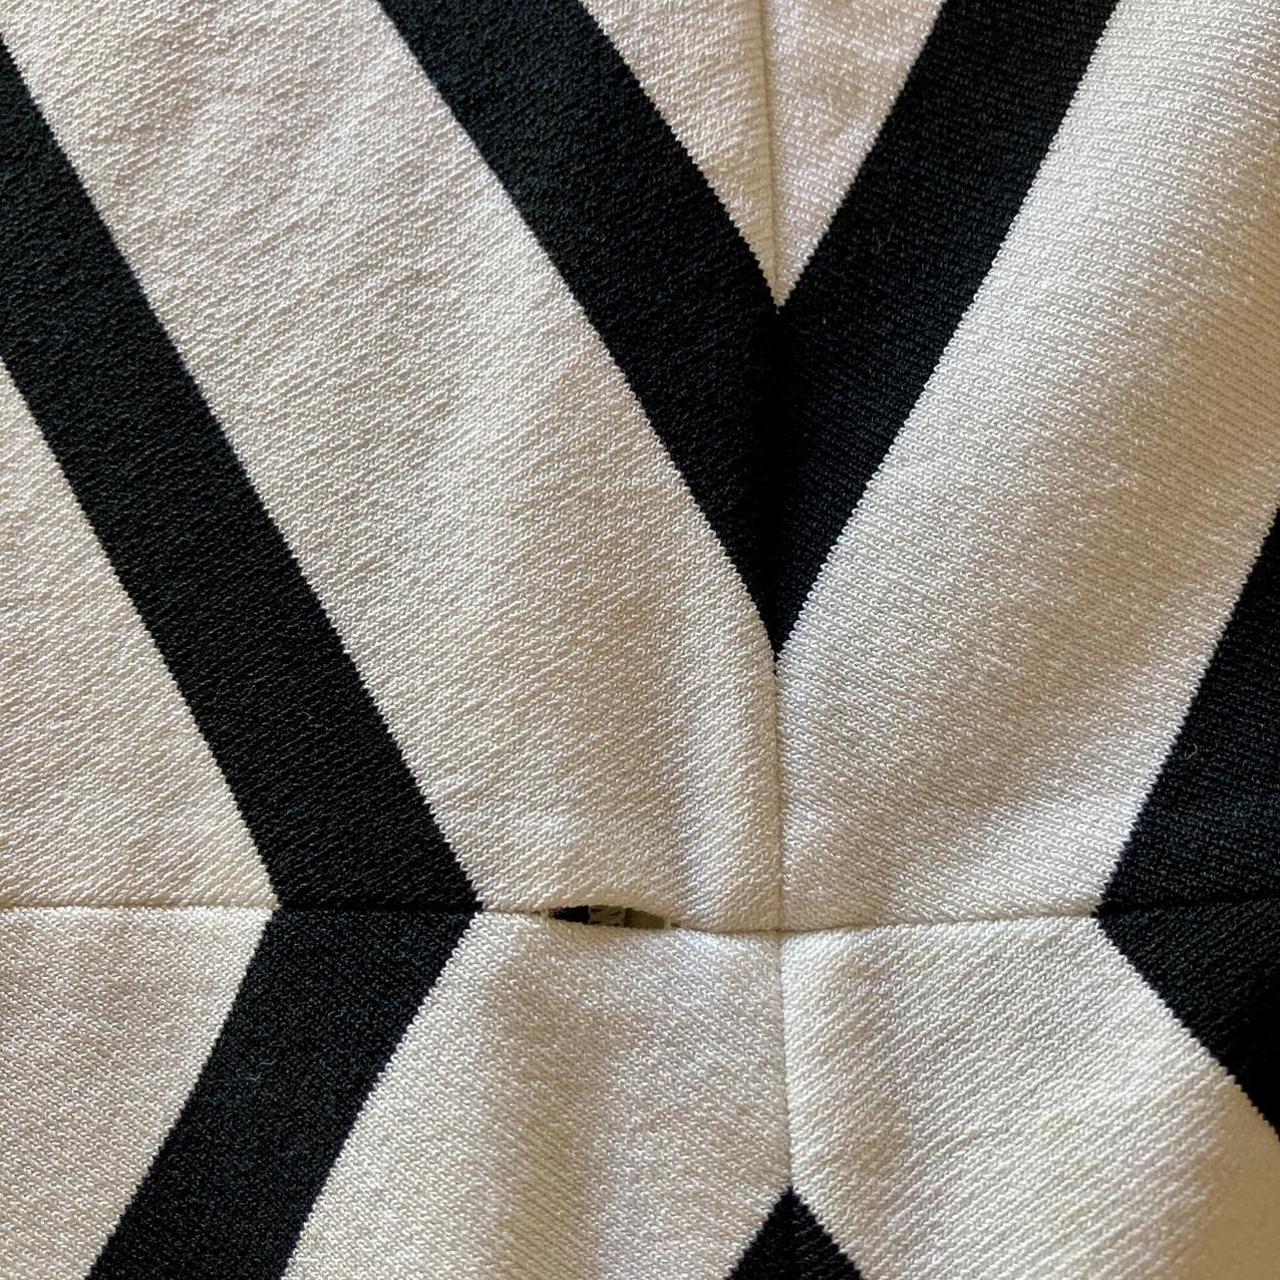 Vintage Louis Vuitton. Louis Vuitton sweater vest. - Depop